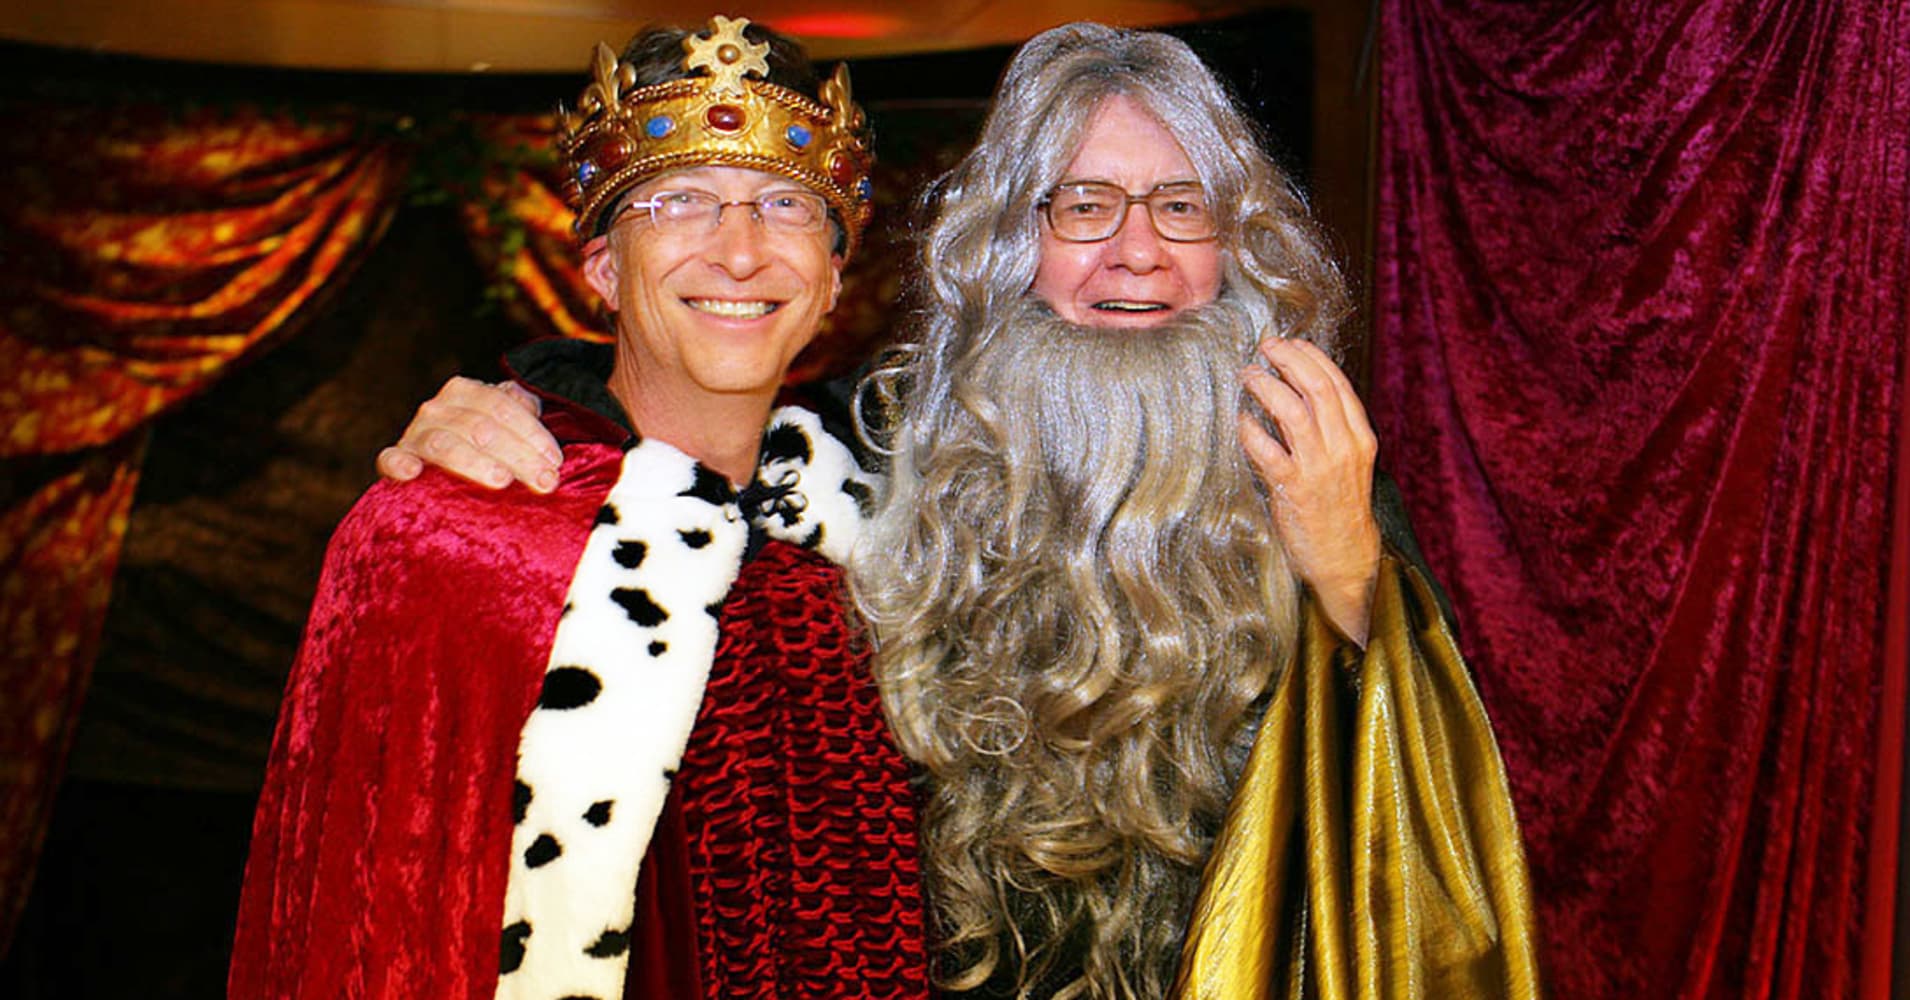 Bill Gates and Warren Buffett at a Camelot themed party where Warren Buffett came as Merlin.